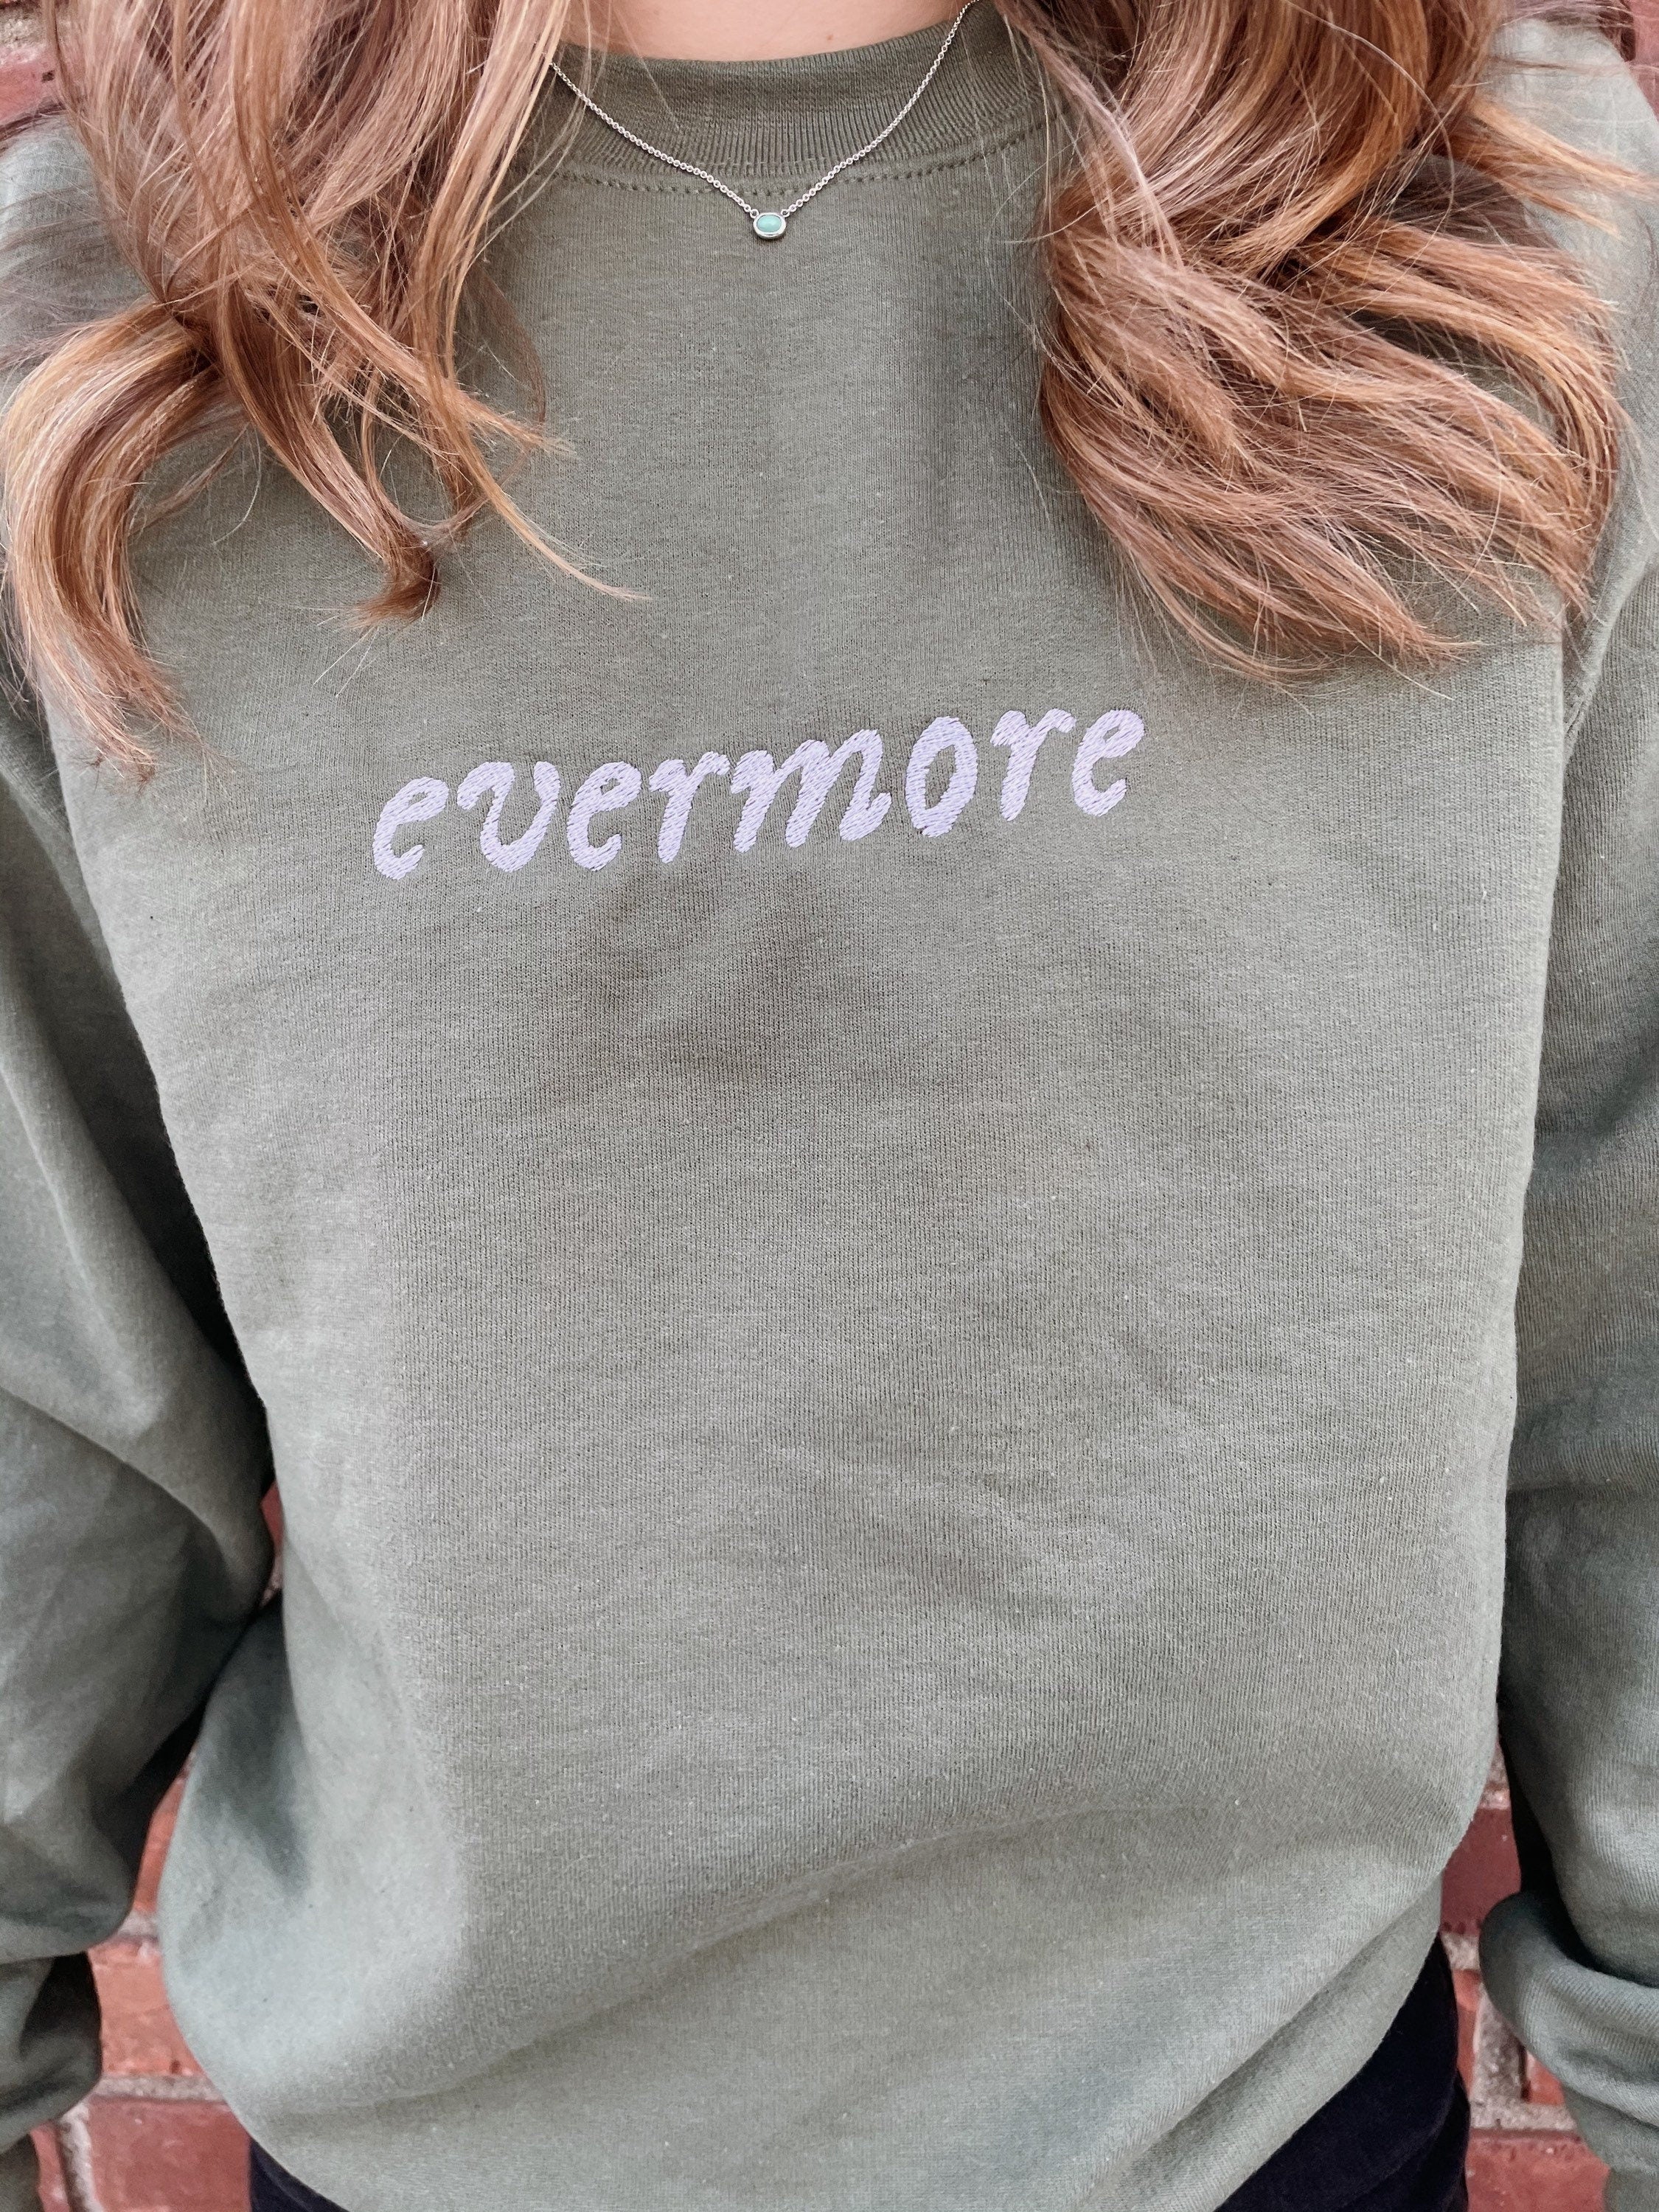 embroidered sweatshirt